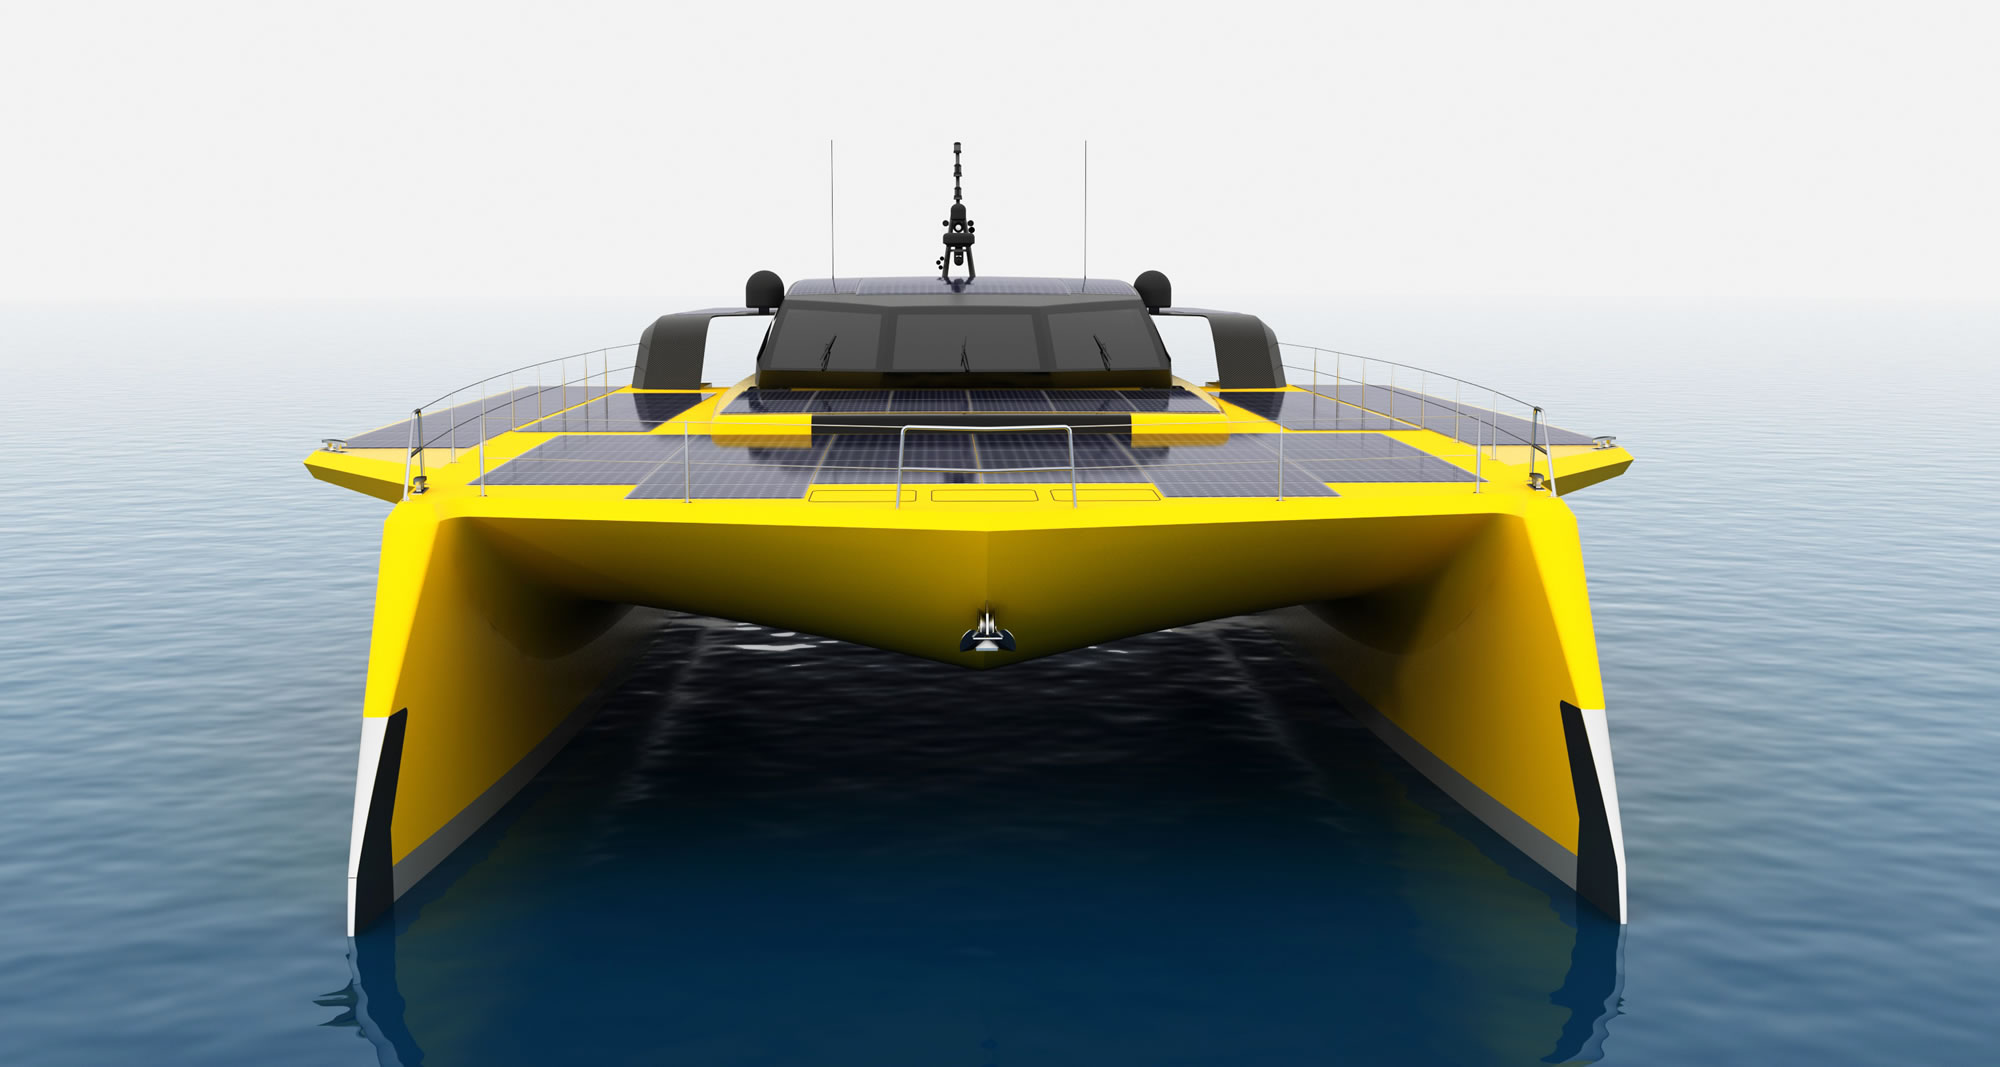 AN Marine Consulting - Дизайн и проектирование яхт и катеров